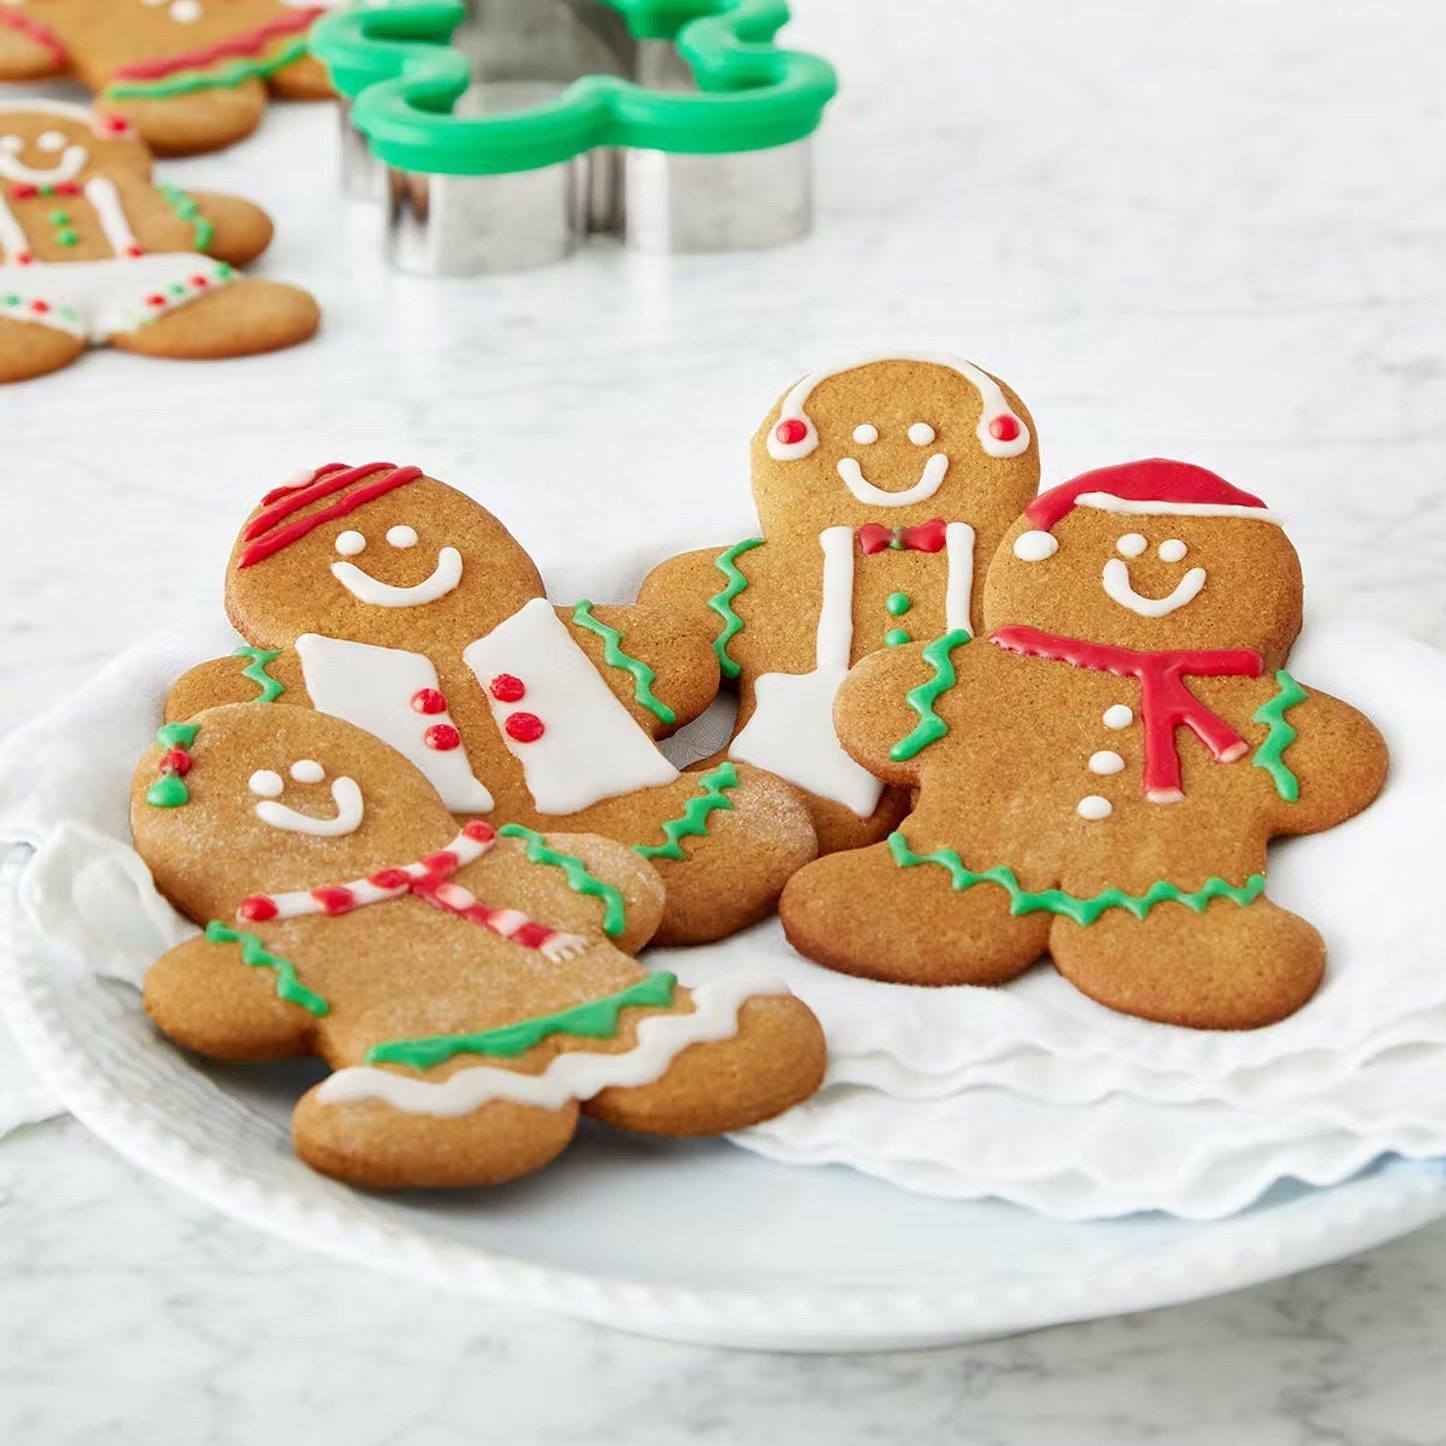 Gingerbread People Baking Kit.bb5c42f86c2d108f9db71e1b7718652e